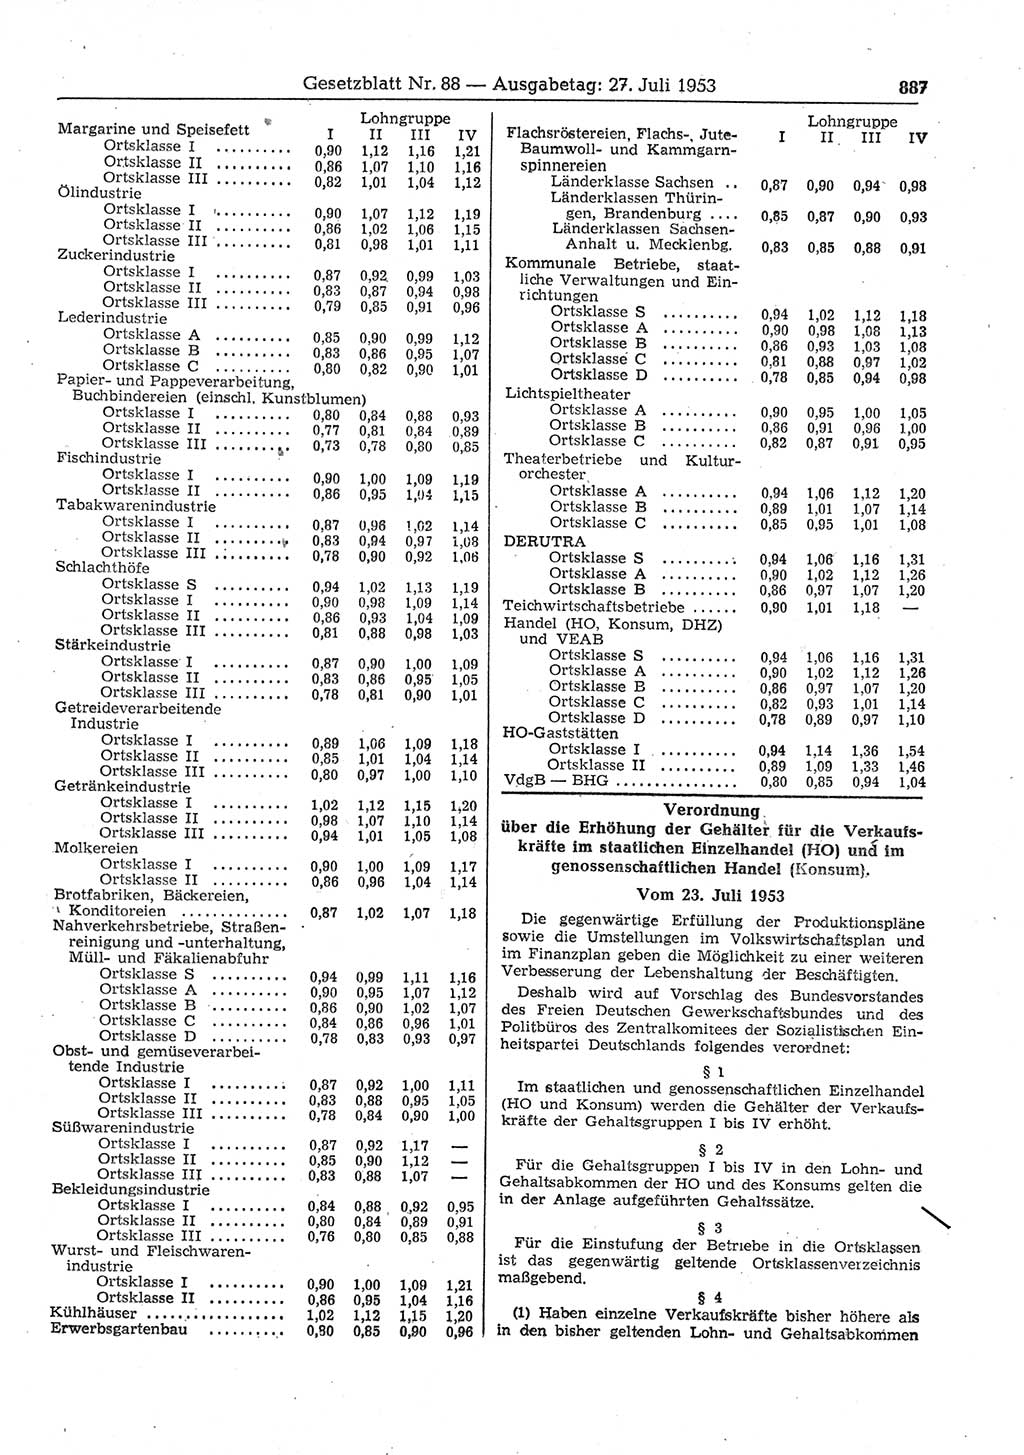 Gesetzblatt (GBl.) der Deutschen Demokratischen Republik (DDR) 1953, Seite 887 (GBl. DDR 1953, S. 887)